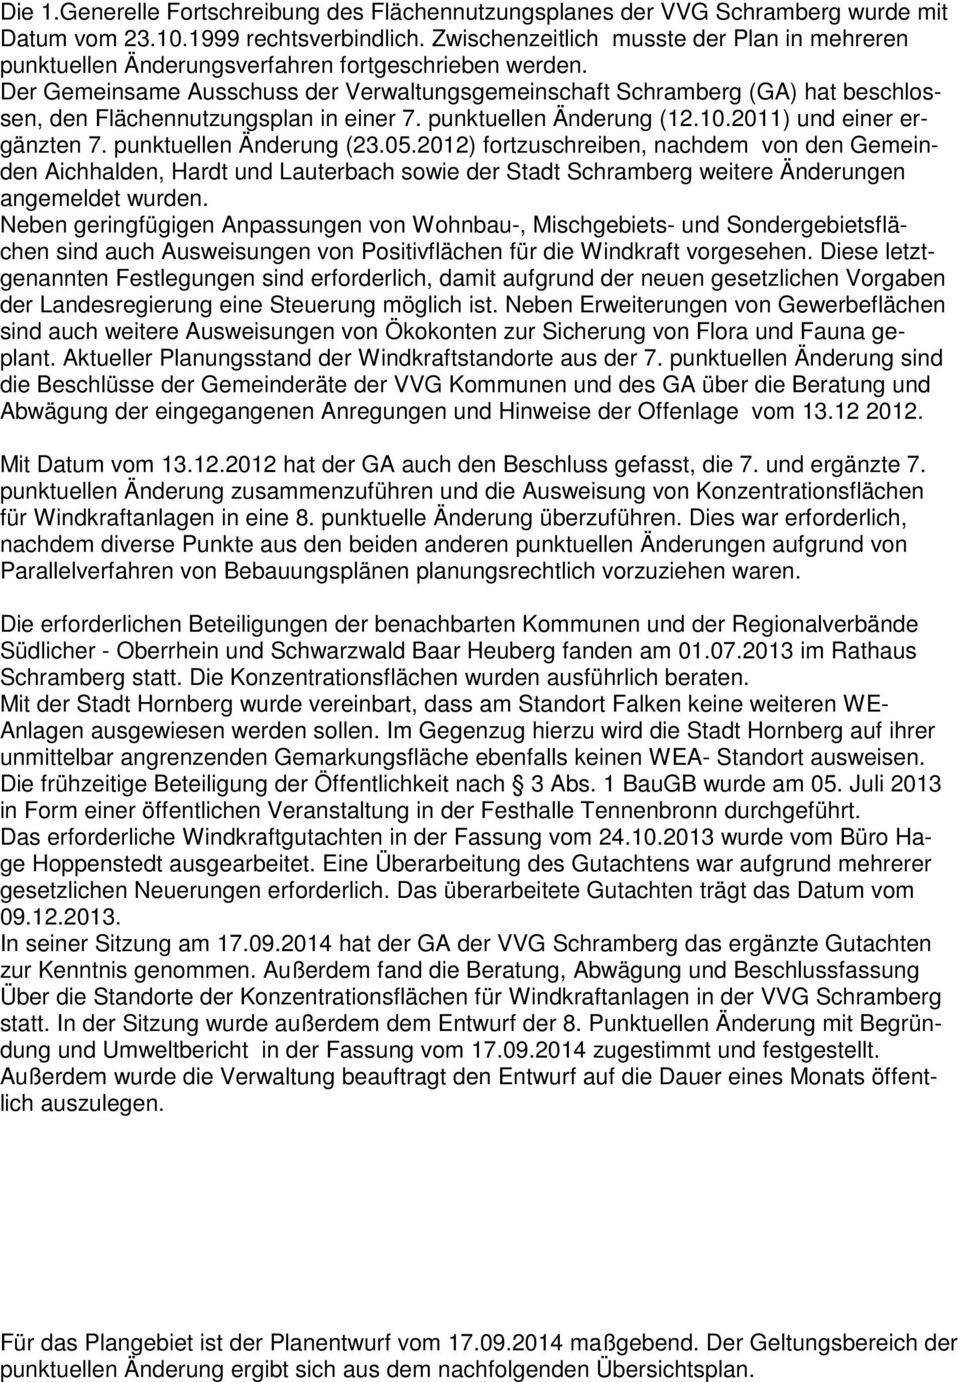 Der Gemeinsame Ausschuss der Verwaltungsgemeinschaft Schramberg (GA) hat beschlossen, den Flächennutzungsplan in einer 7. punktuellen Änderung (12.10.2011) und einer ergänzten 7.